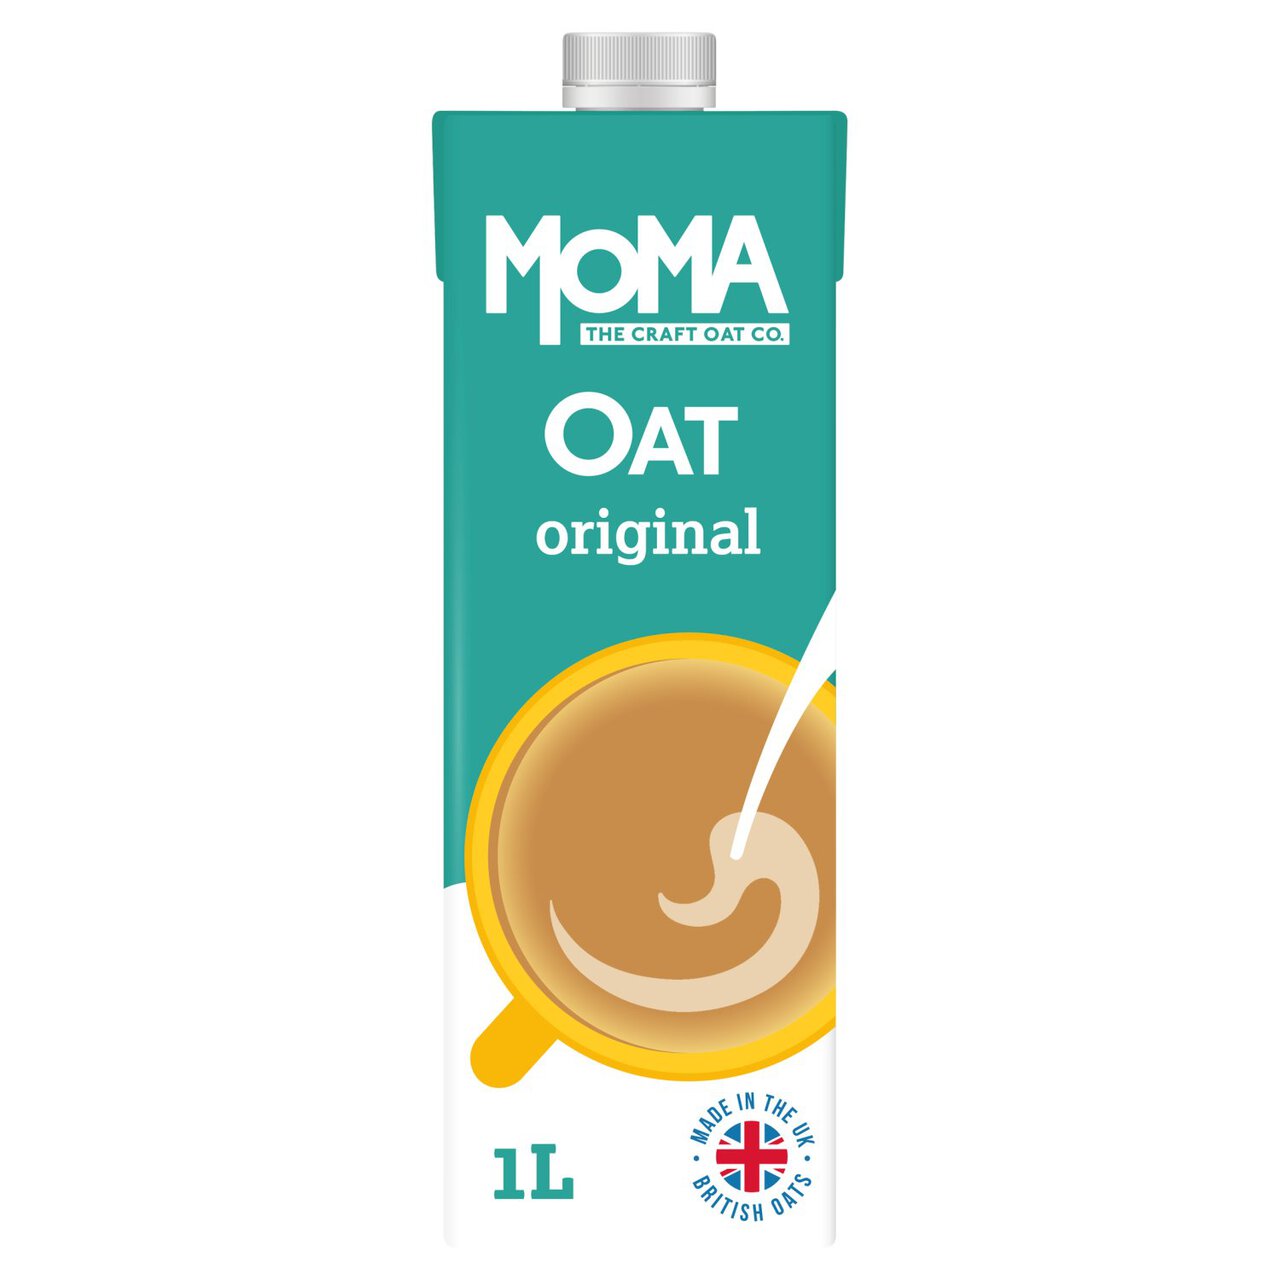 MOMA Original Oat Drink 1l